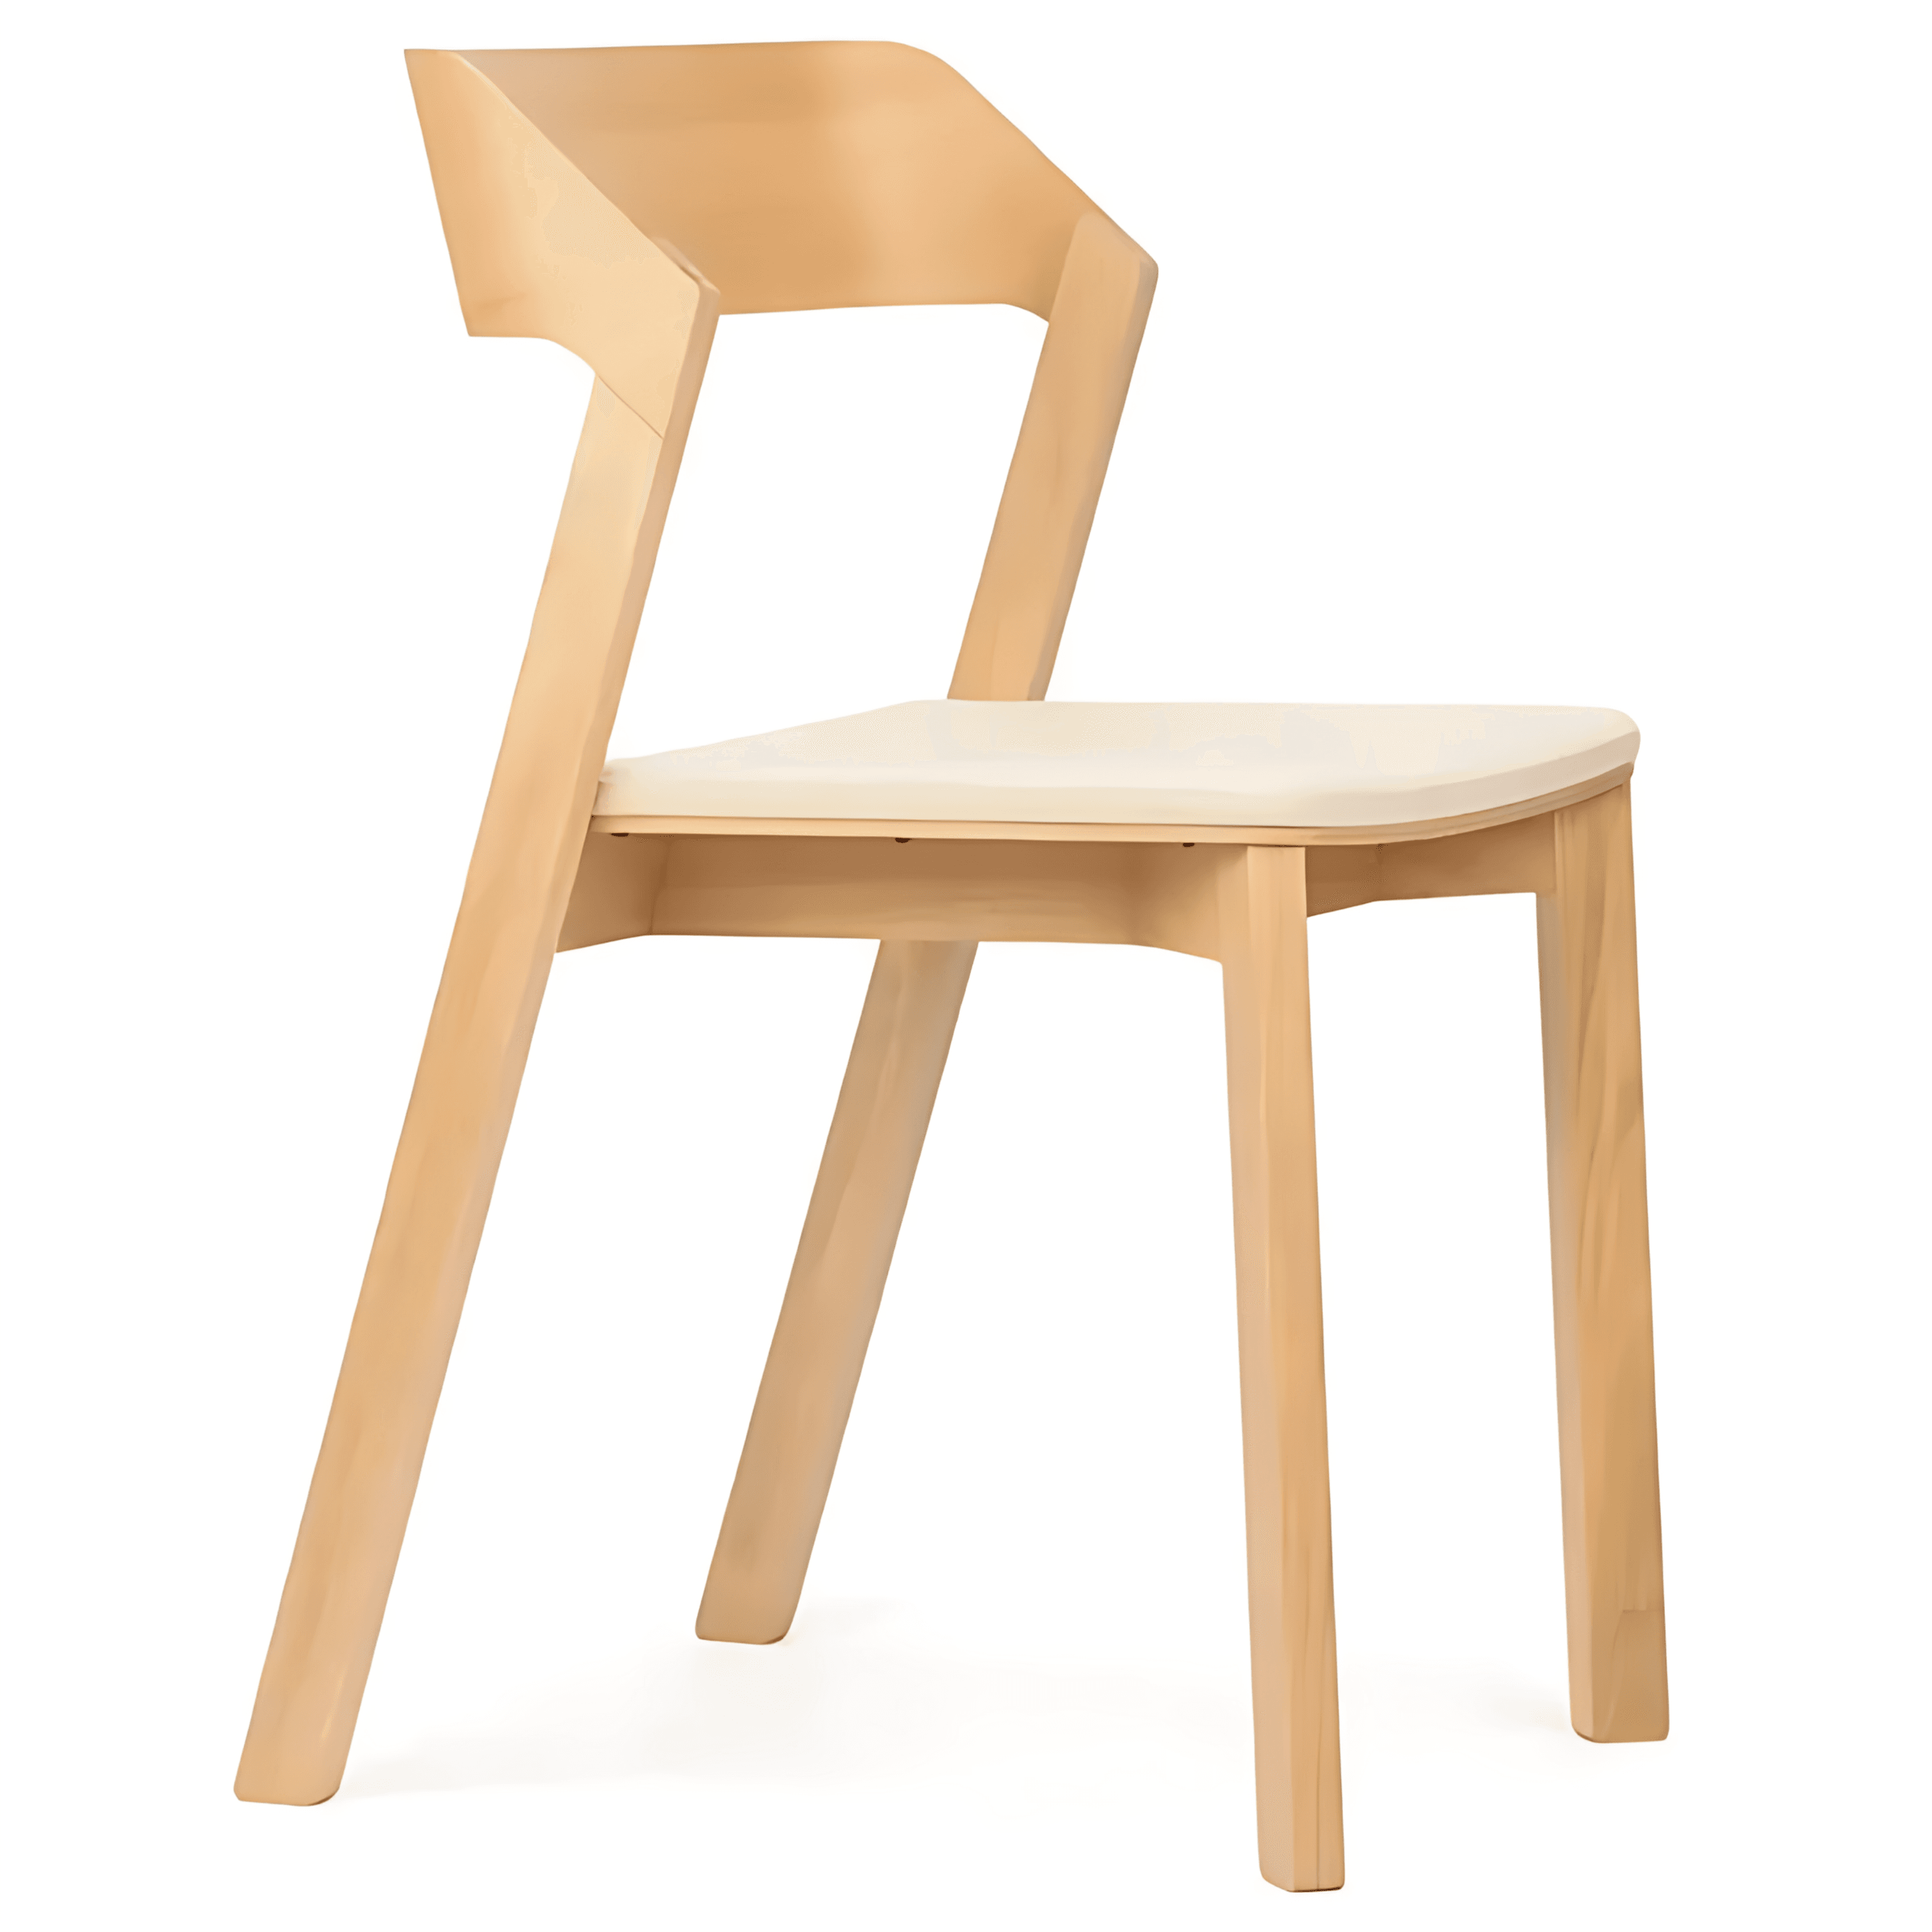 Vela Chair | Natural Wood Design Chair